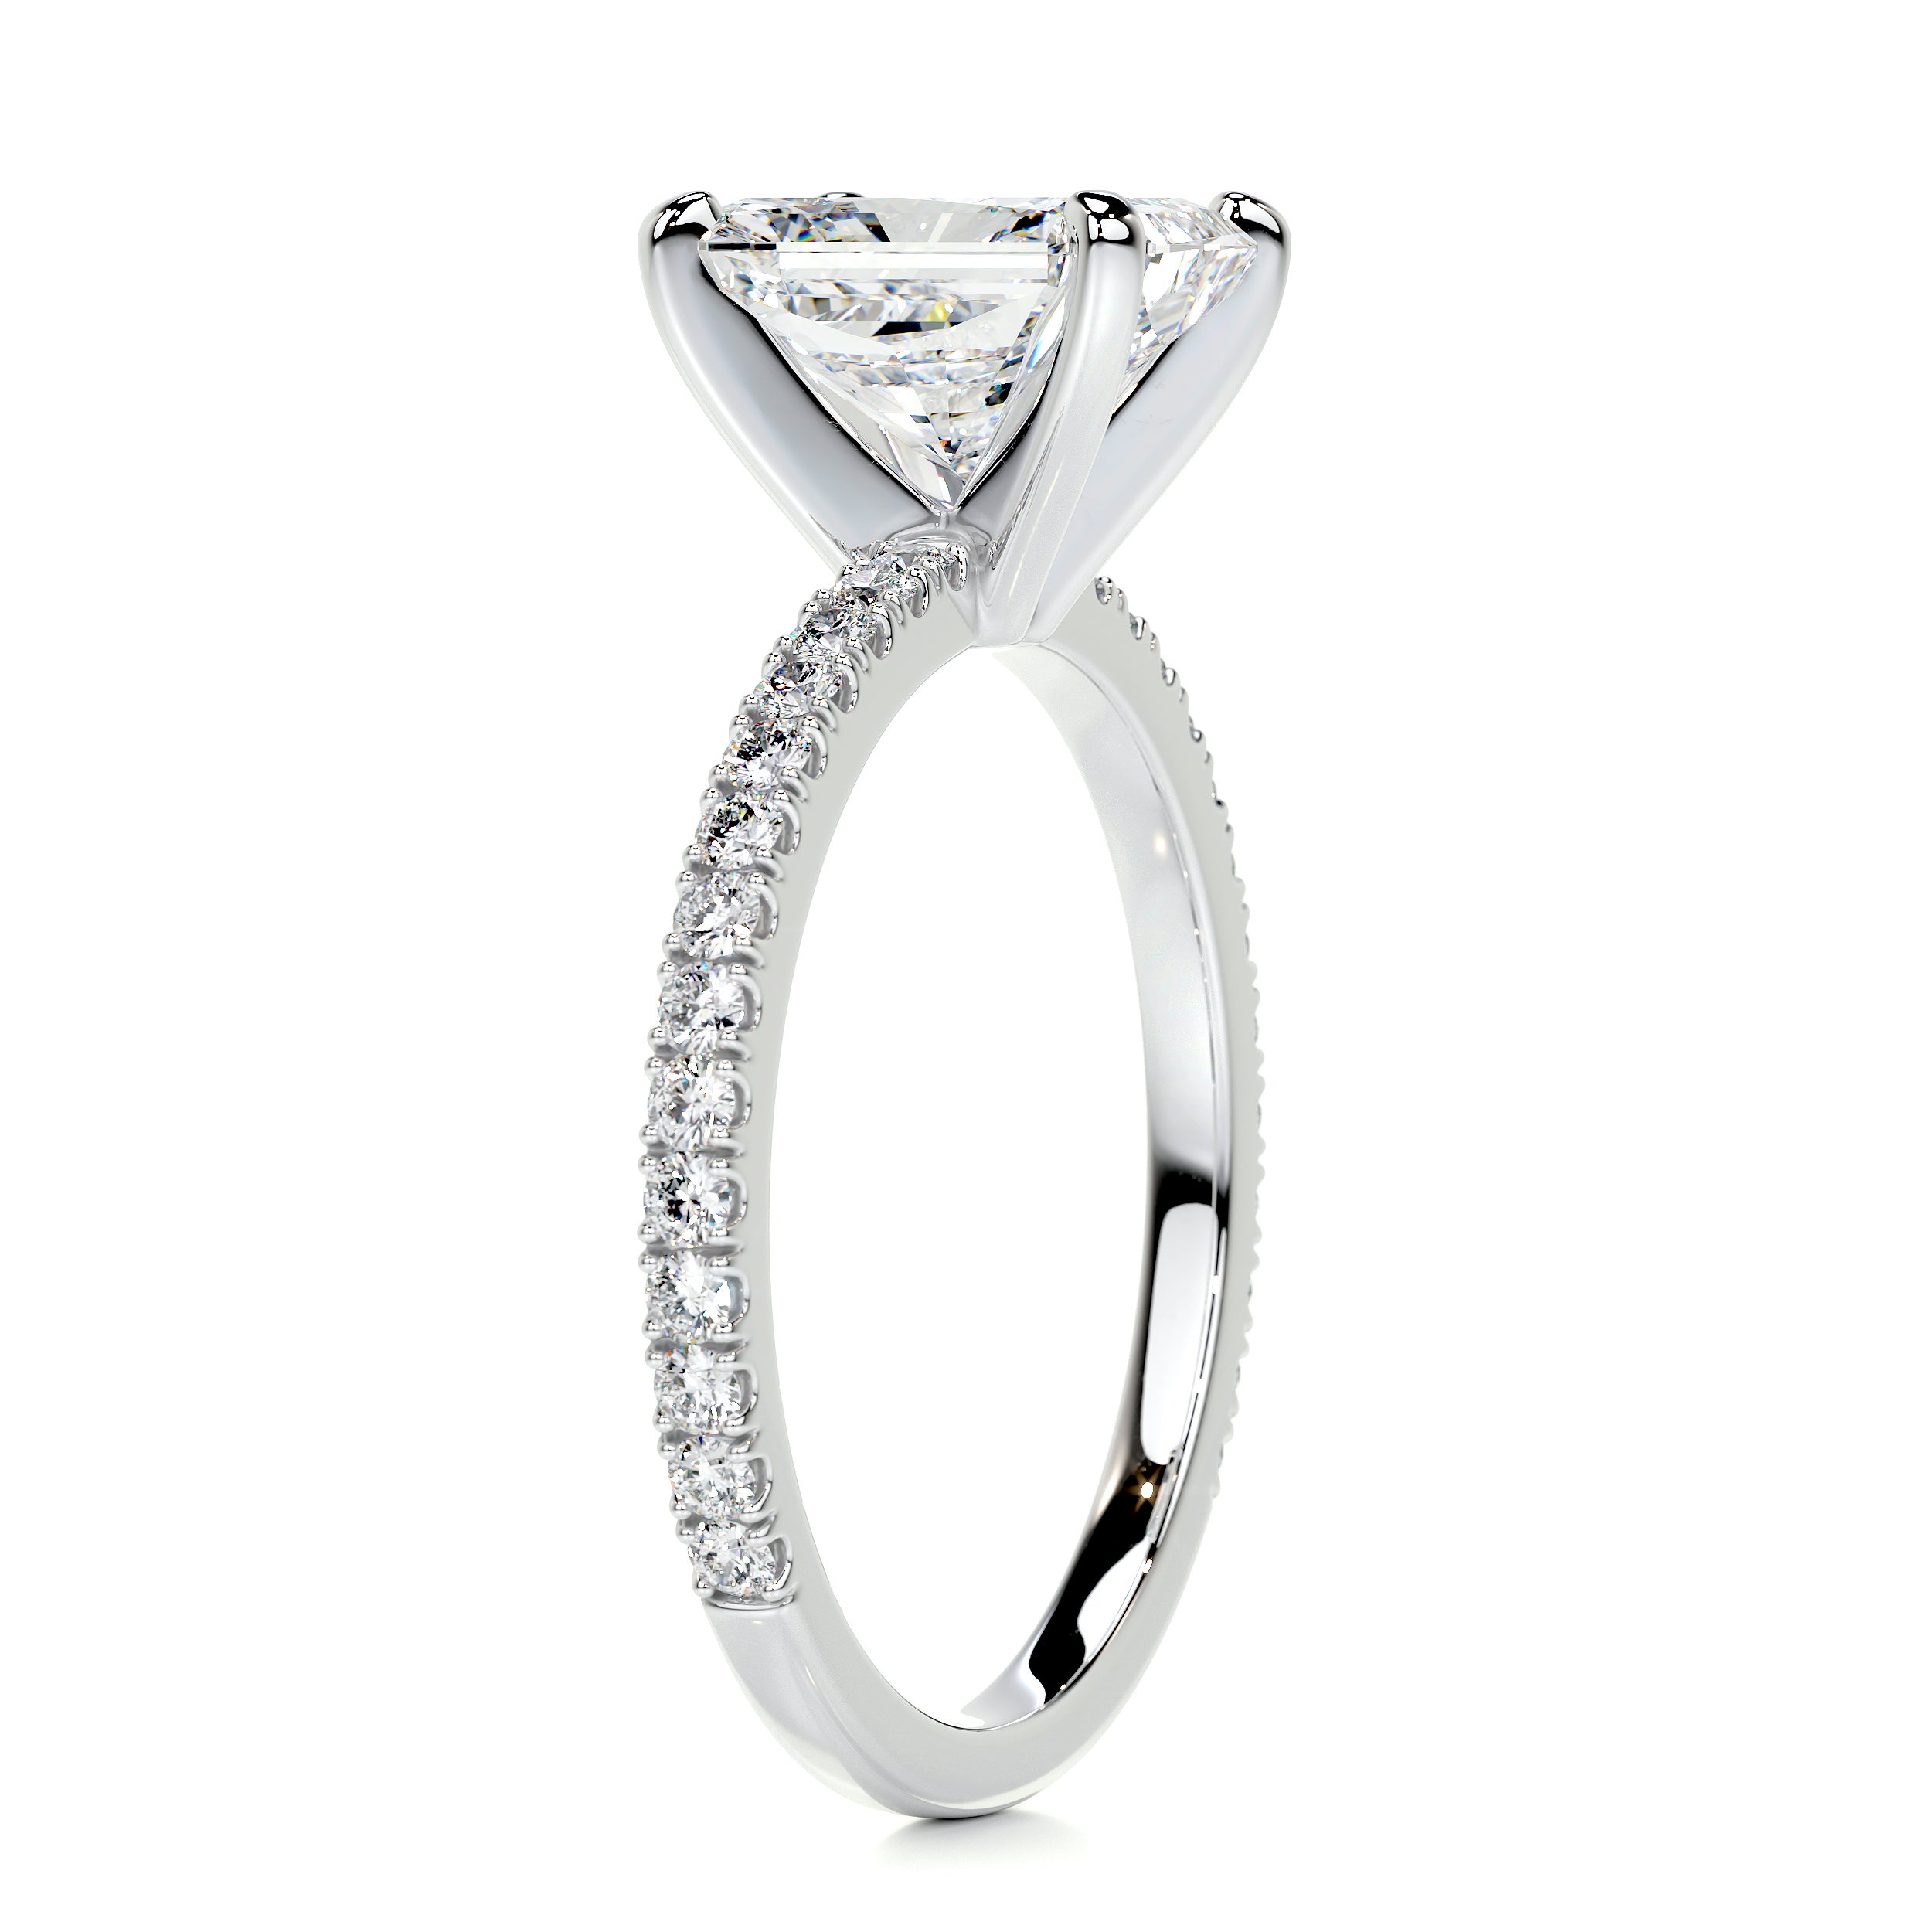 Audrey Diamond Engagement Ring   (2.3 Carat) -14K White Gold